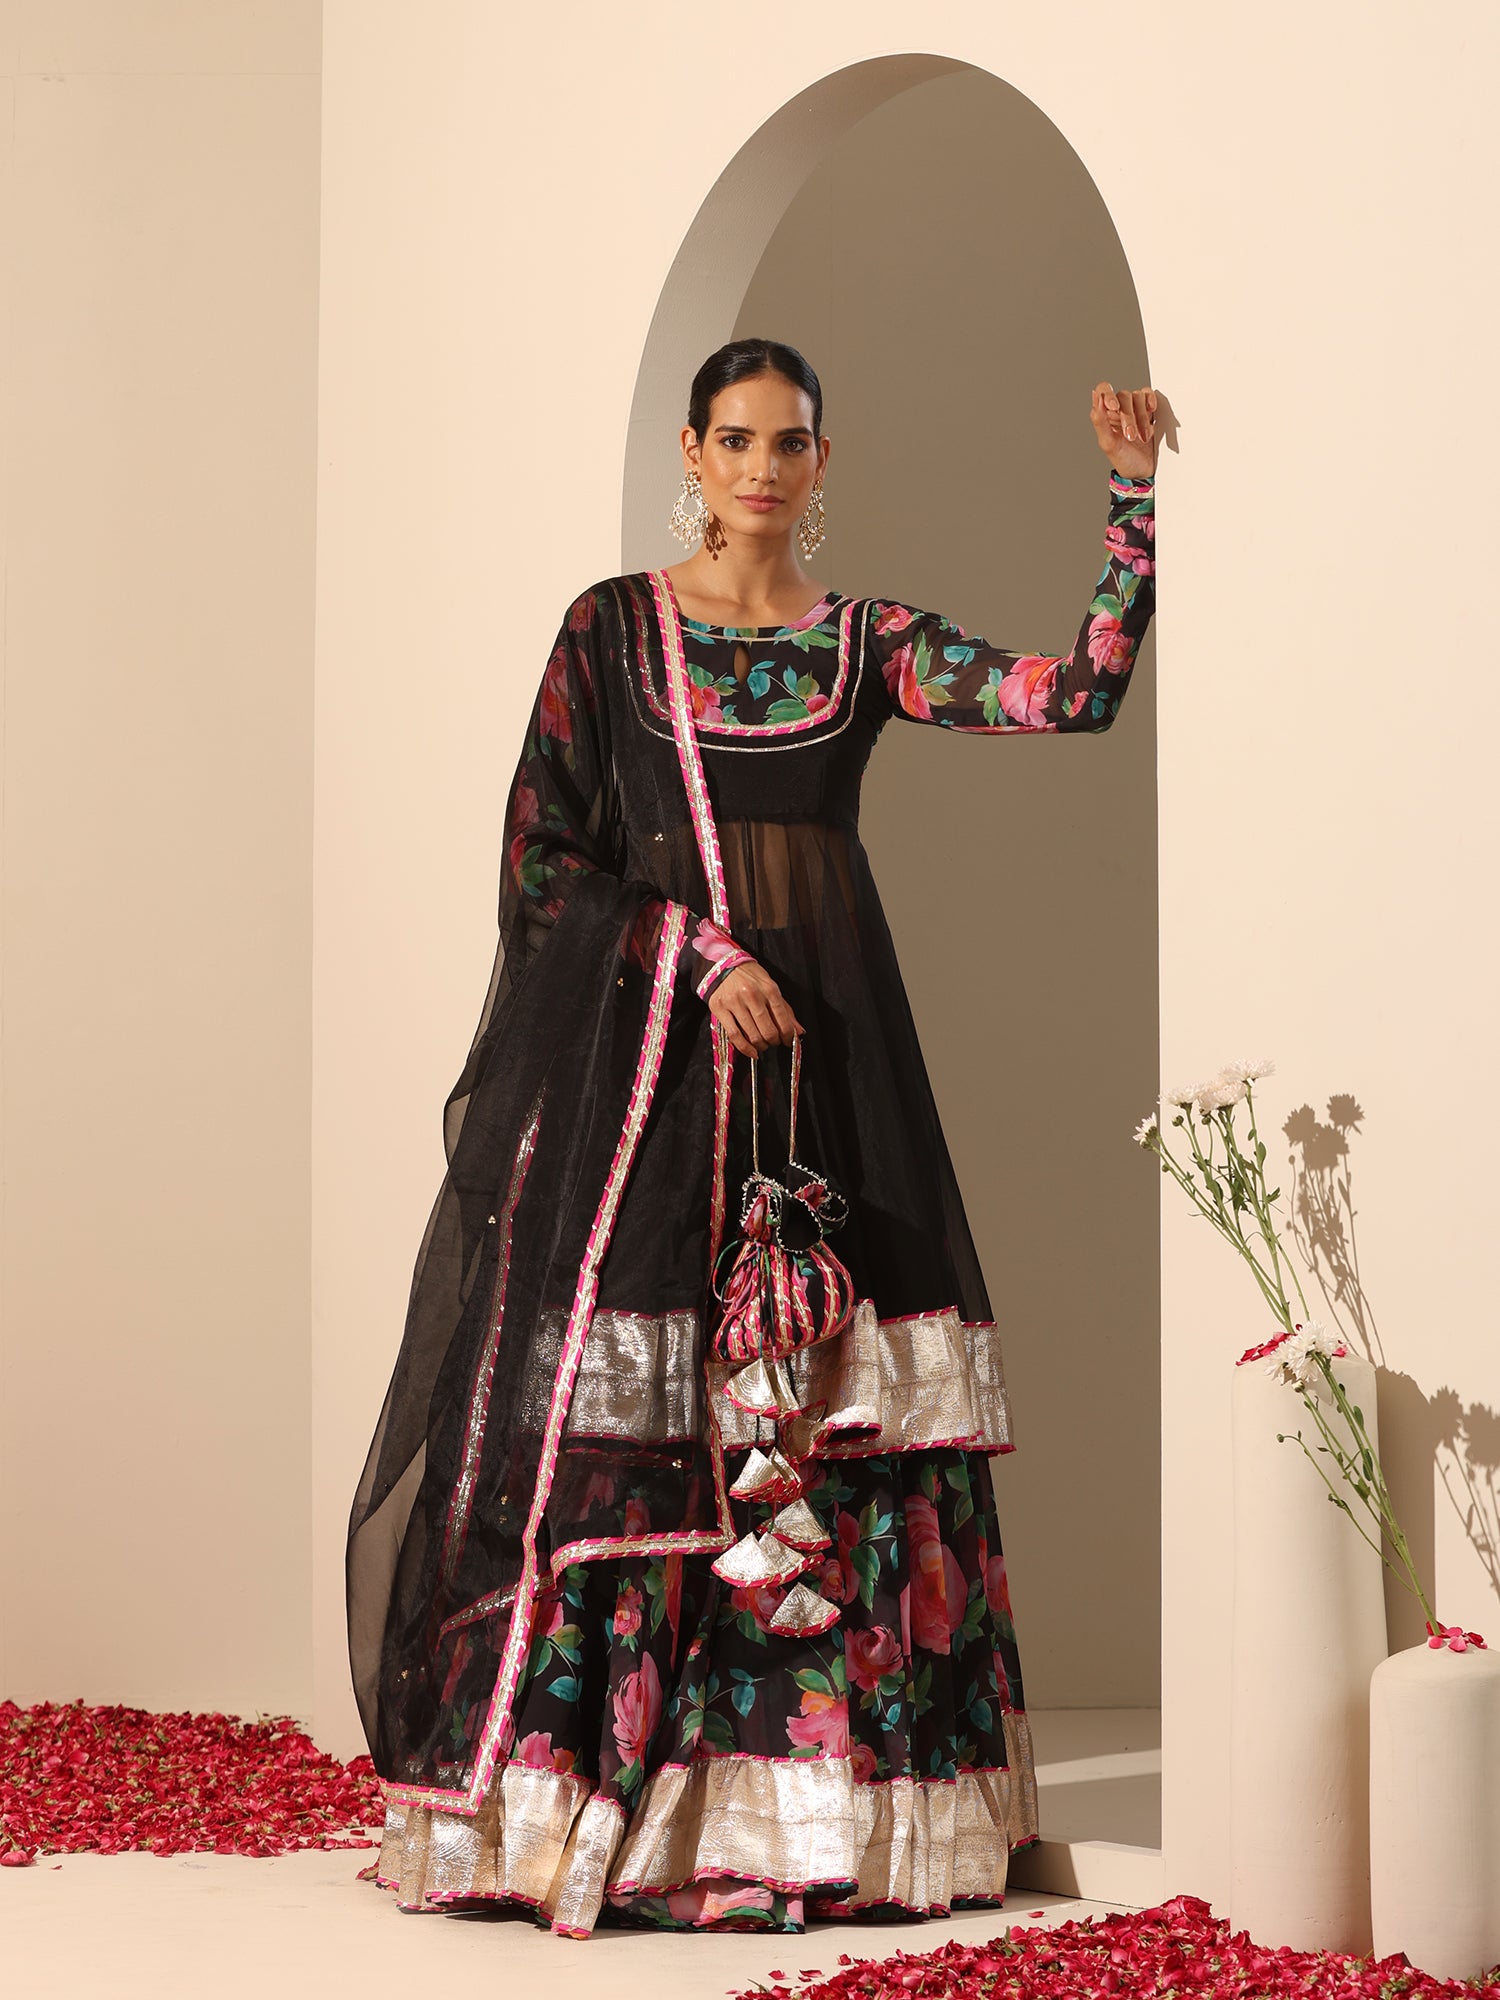 Bangladeshi Bride | Retro fashion vintage, Desi wear, Fashion